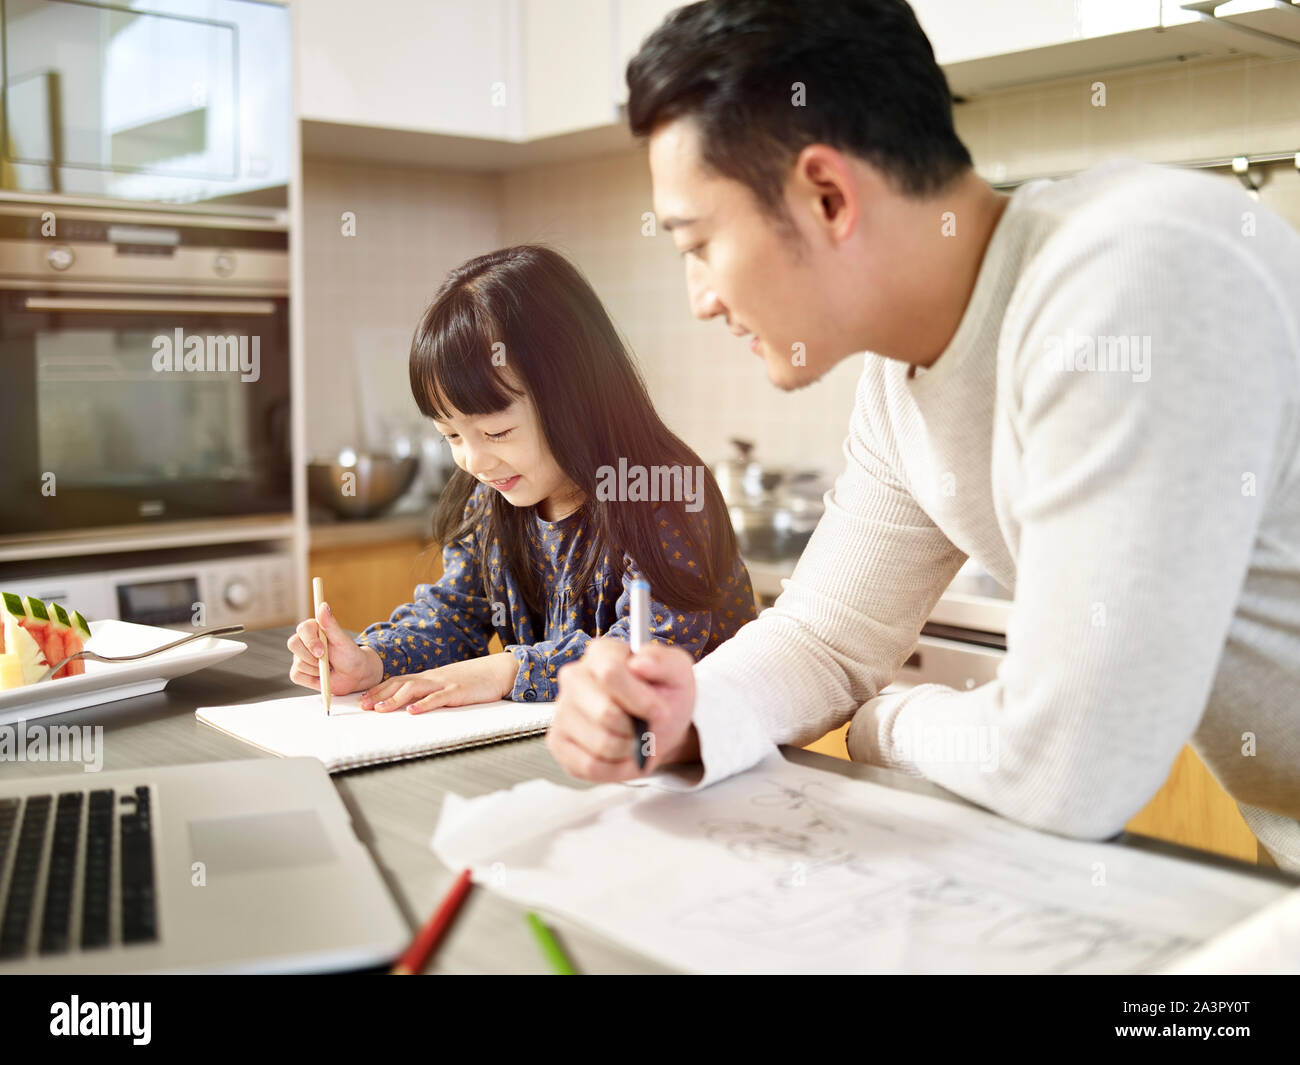 Hombre asiático joven diseñador free lance padre trabajando en casa teniendo cuidado de la hija. Foto de stock